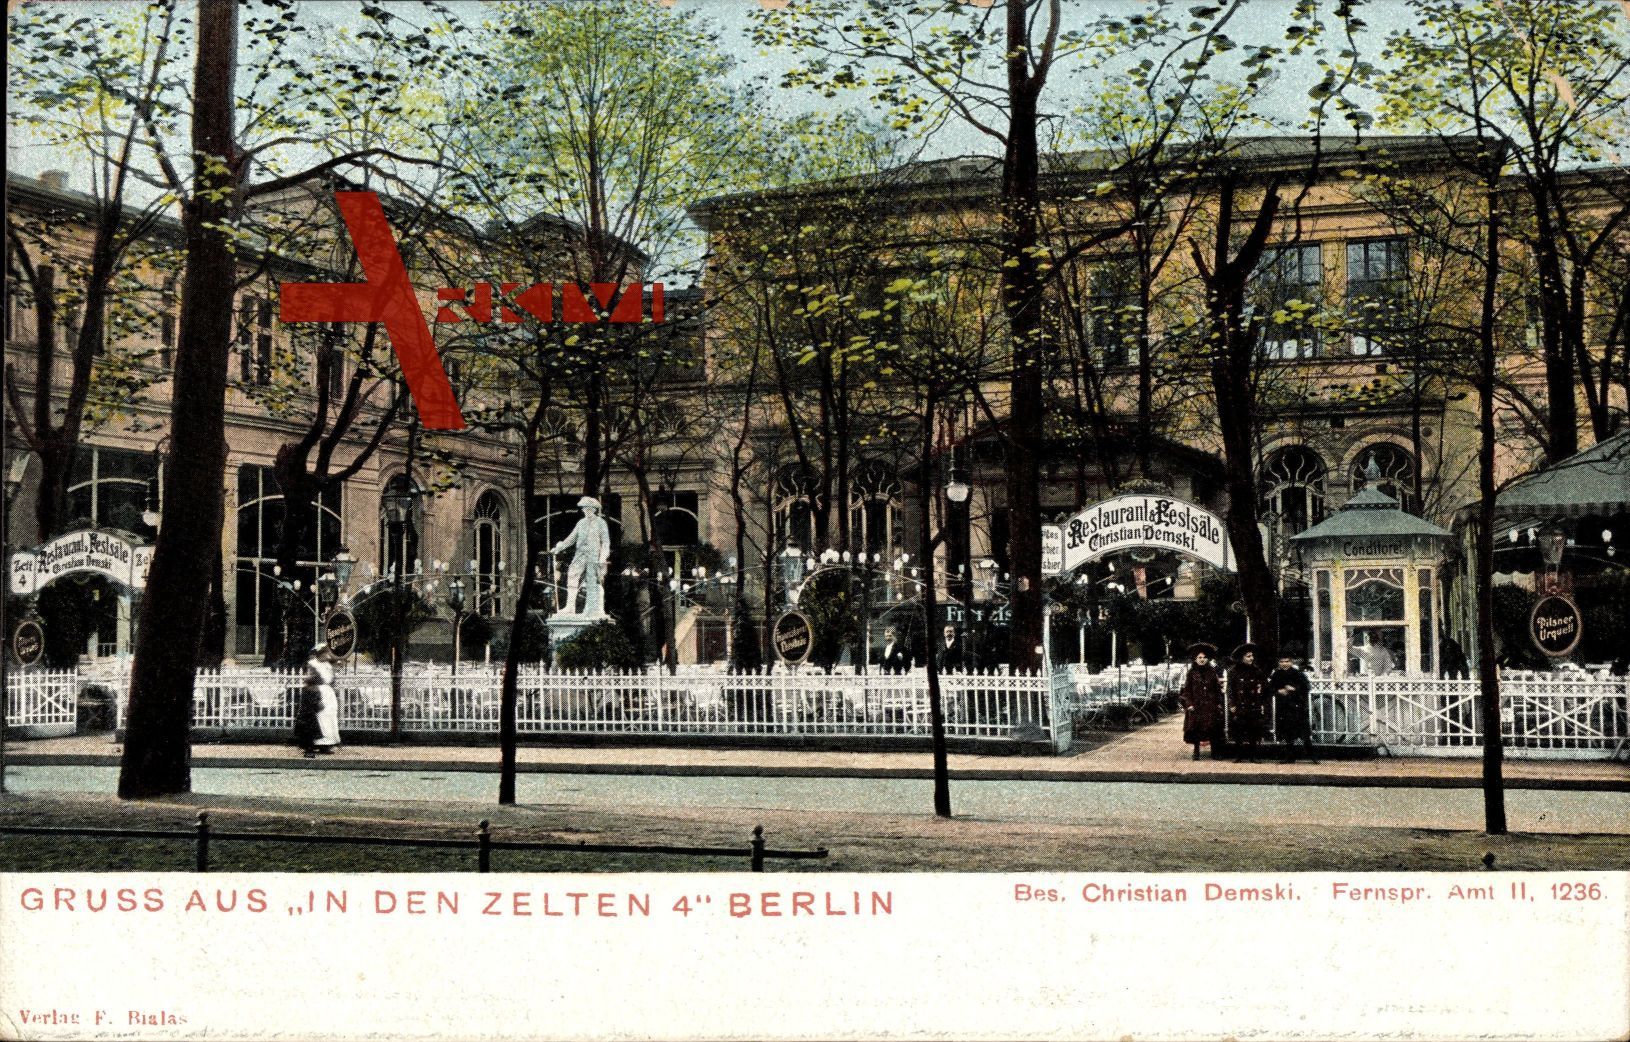 Berlin Tiergarten, In den Zelten 4, Gasthaus von Christian Demski